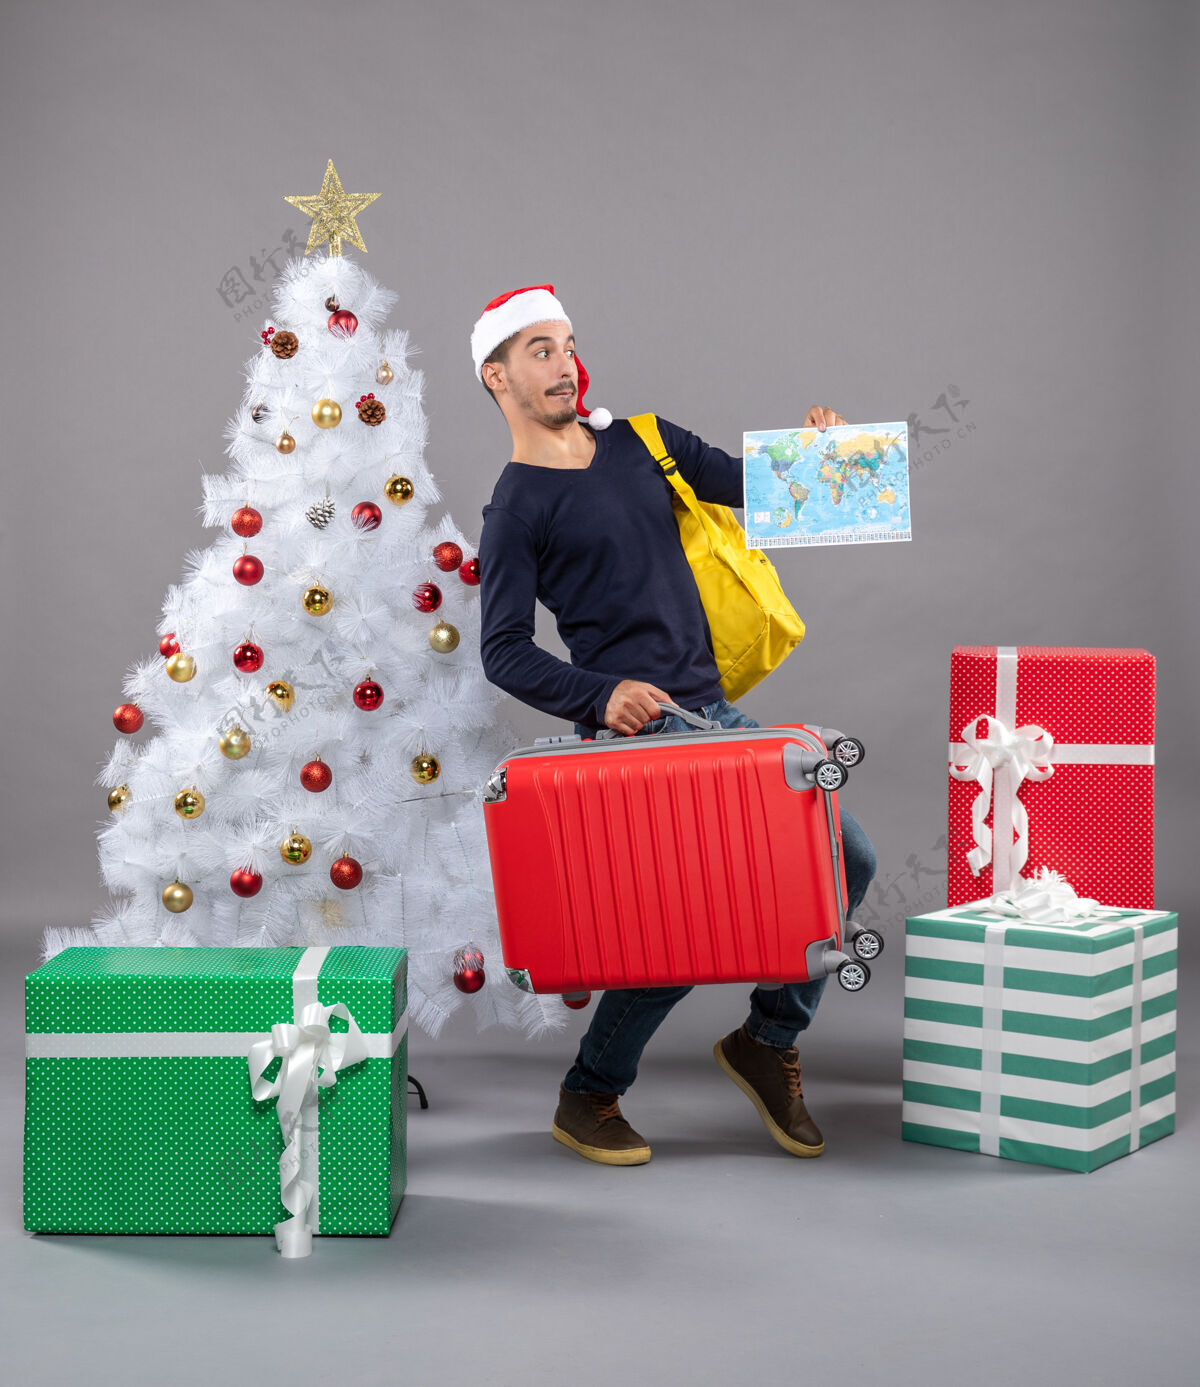 圣诞树一个带着黄色背包的年轻人拿着圣诞树旁的地图 礼物是灰色的附近帽子圣诞老人